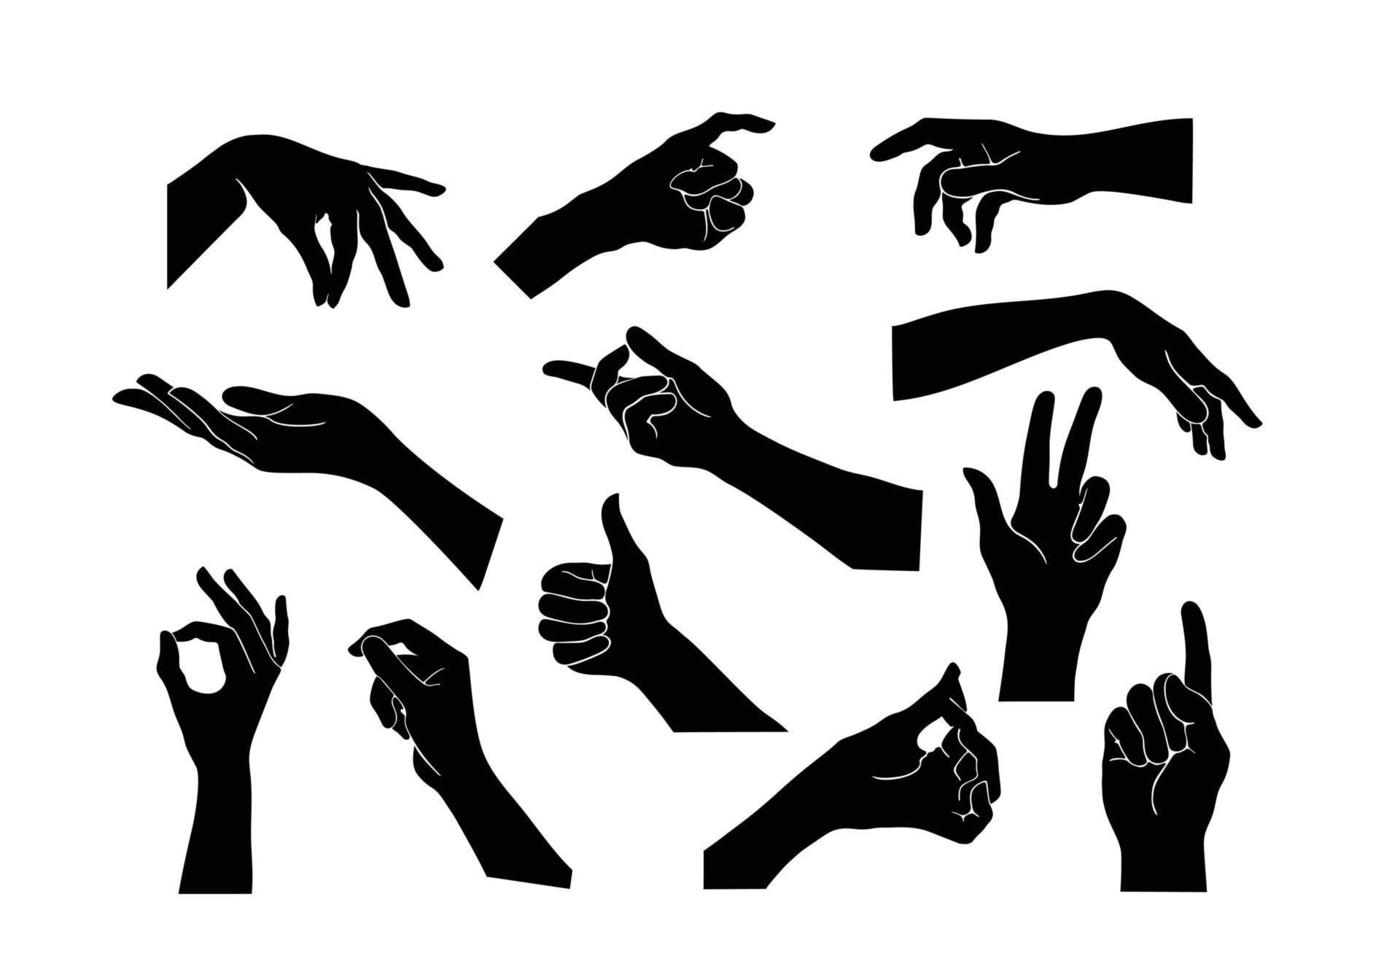 vektor samling uppsättning hand gester. svart handgest som en siluett eller skugga av händer. illustrationer av mänsklig kroppsrörelse i svart.